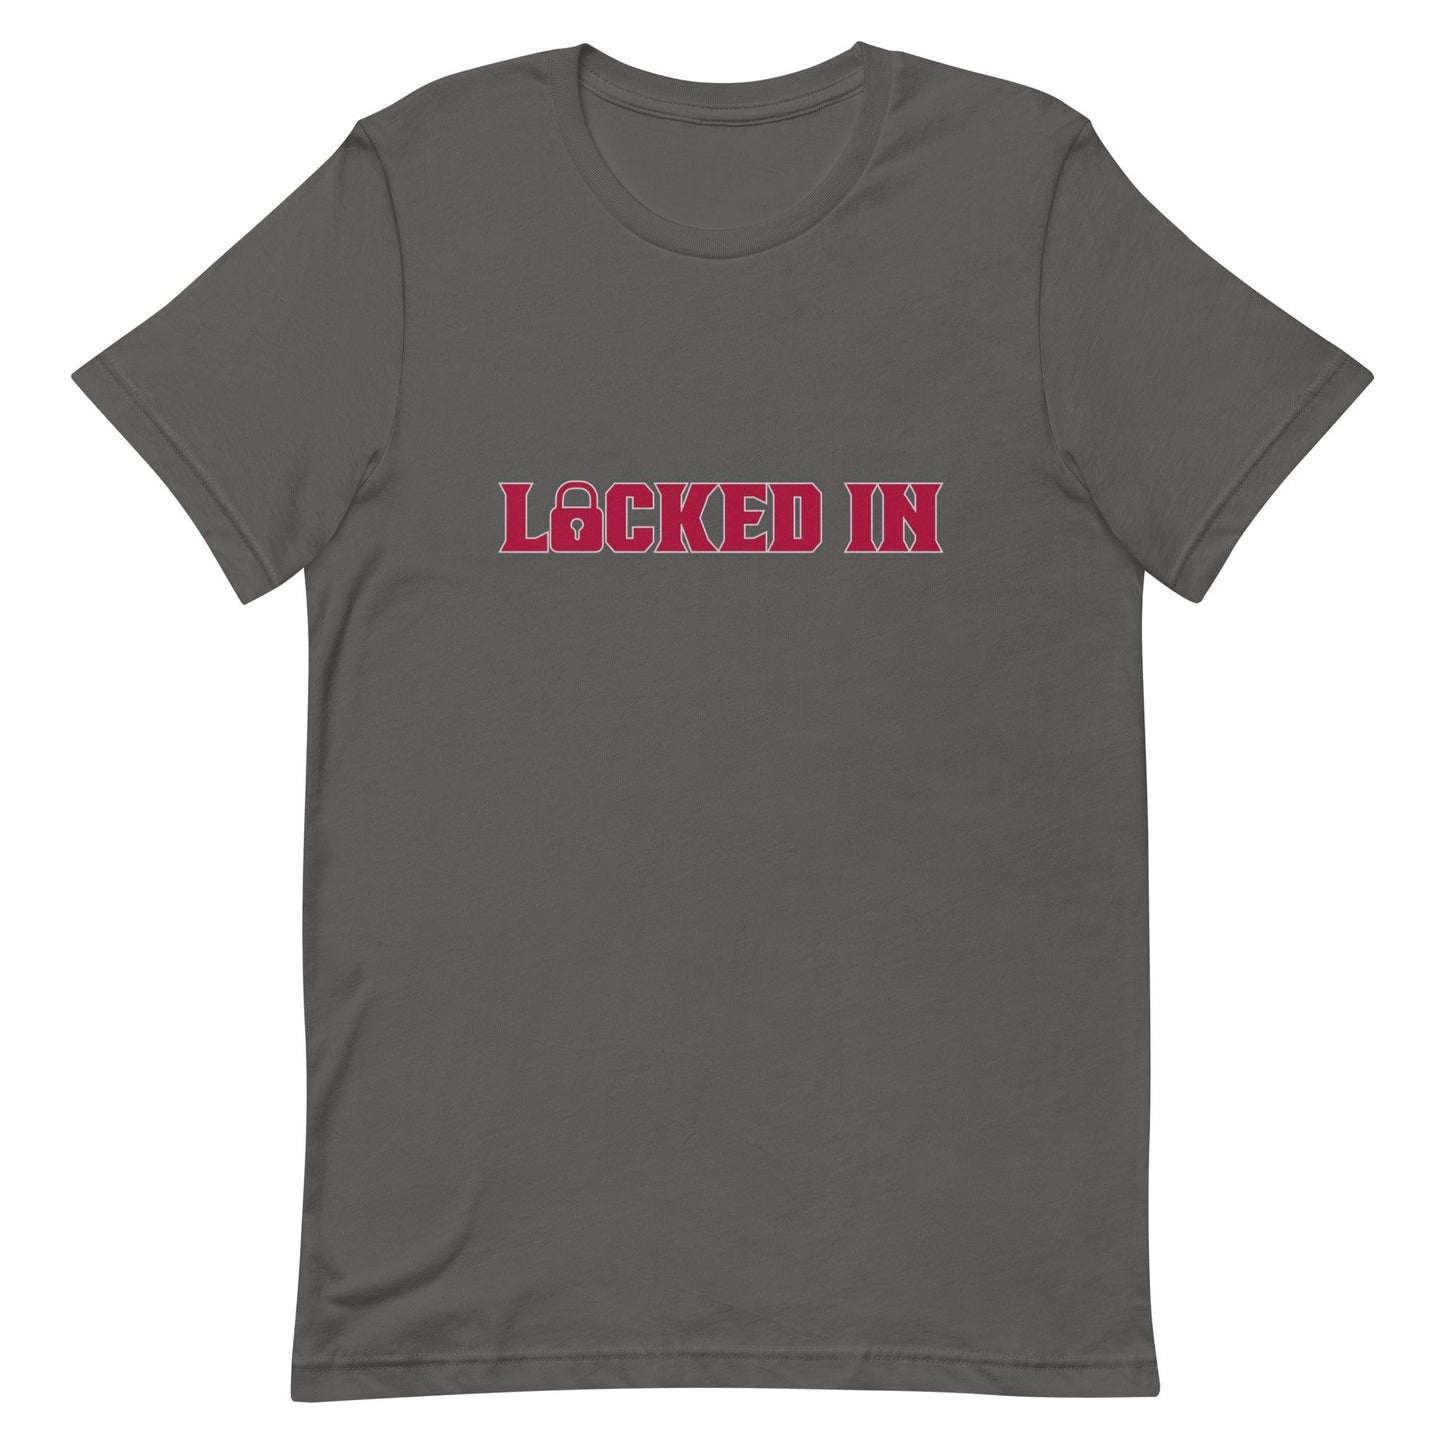 Monkell Goodwine "Locked In" t-shirt - Fan Arch